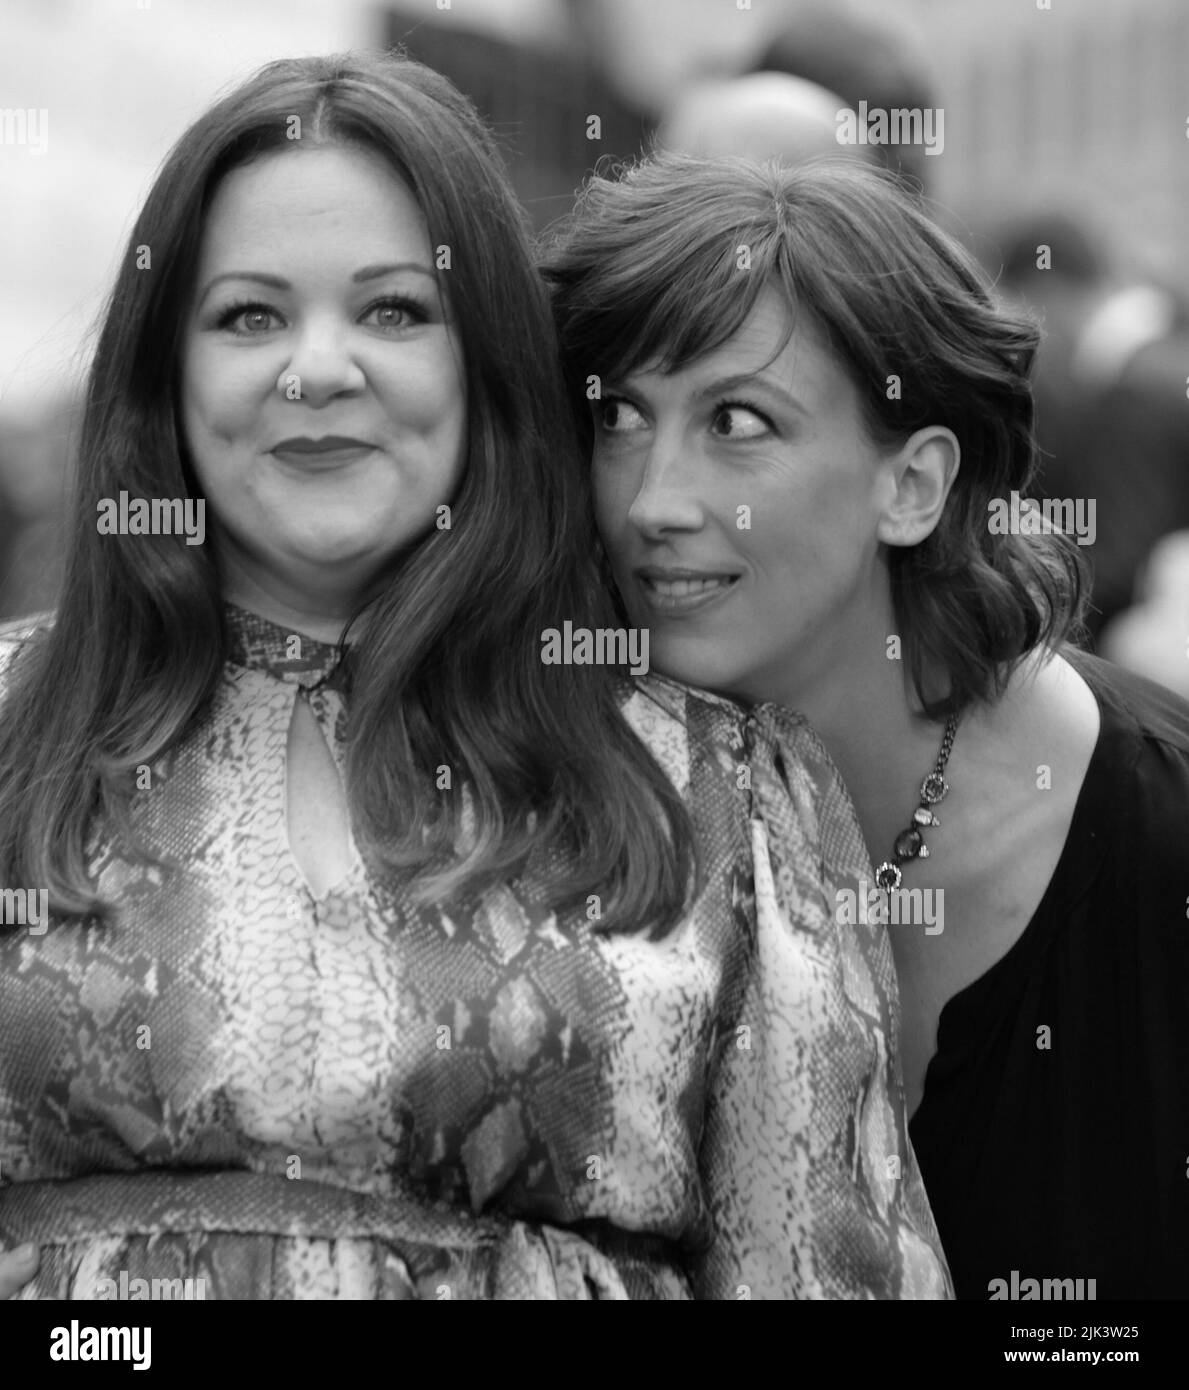 Londres, Royaume-Uni, 27 mai 2015 : Melissa Mccarthy et Miranda Hart assister à la première européenne de "espion" au cinéma Odeon Leicester Square, à Londres Banque D'Images